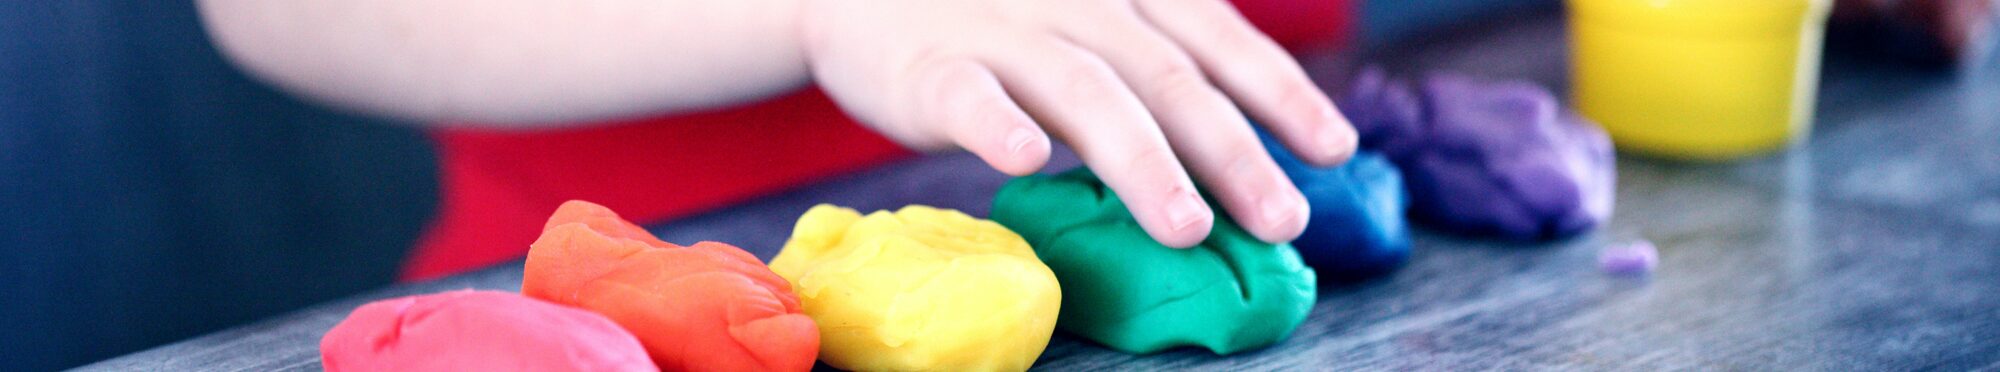 Kinderhände spielen mit Knetgummi